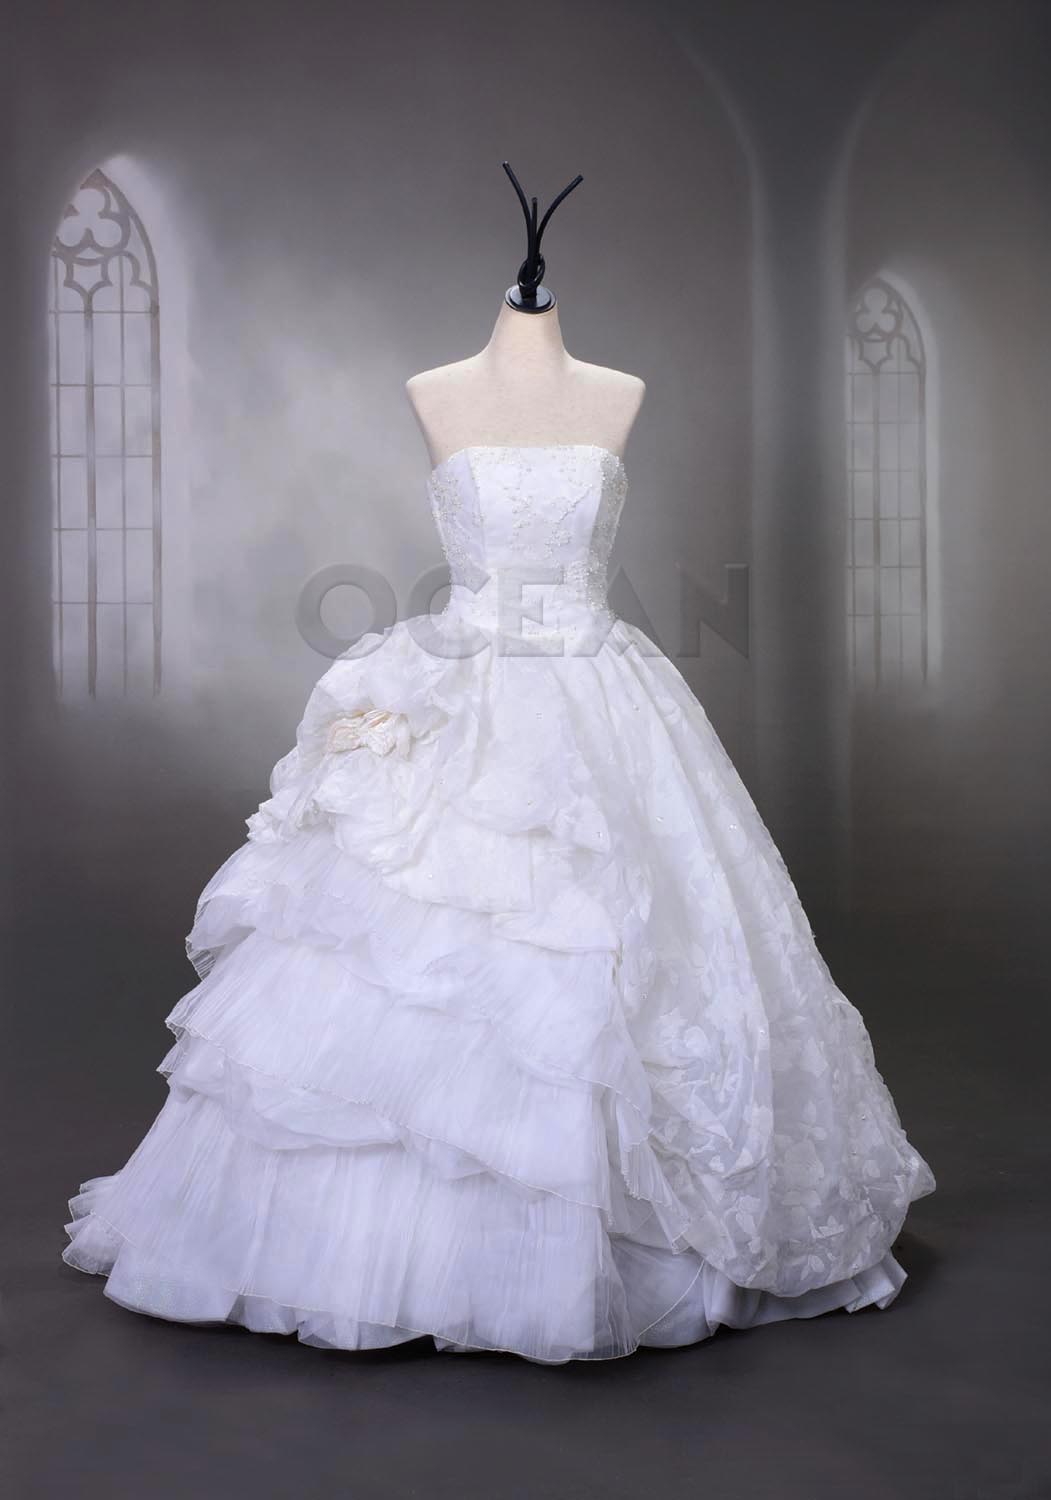 大量入荷ウェディングドレスの紹介!かわいらしい白ドレス | 写真館オーシャン